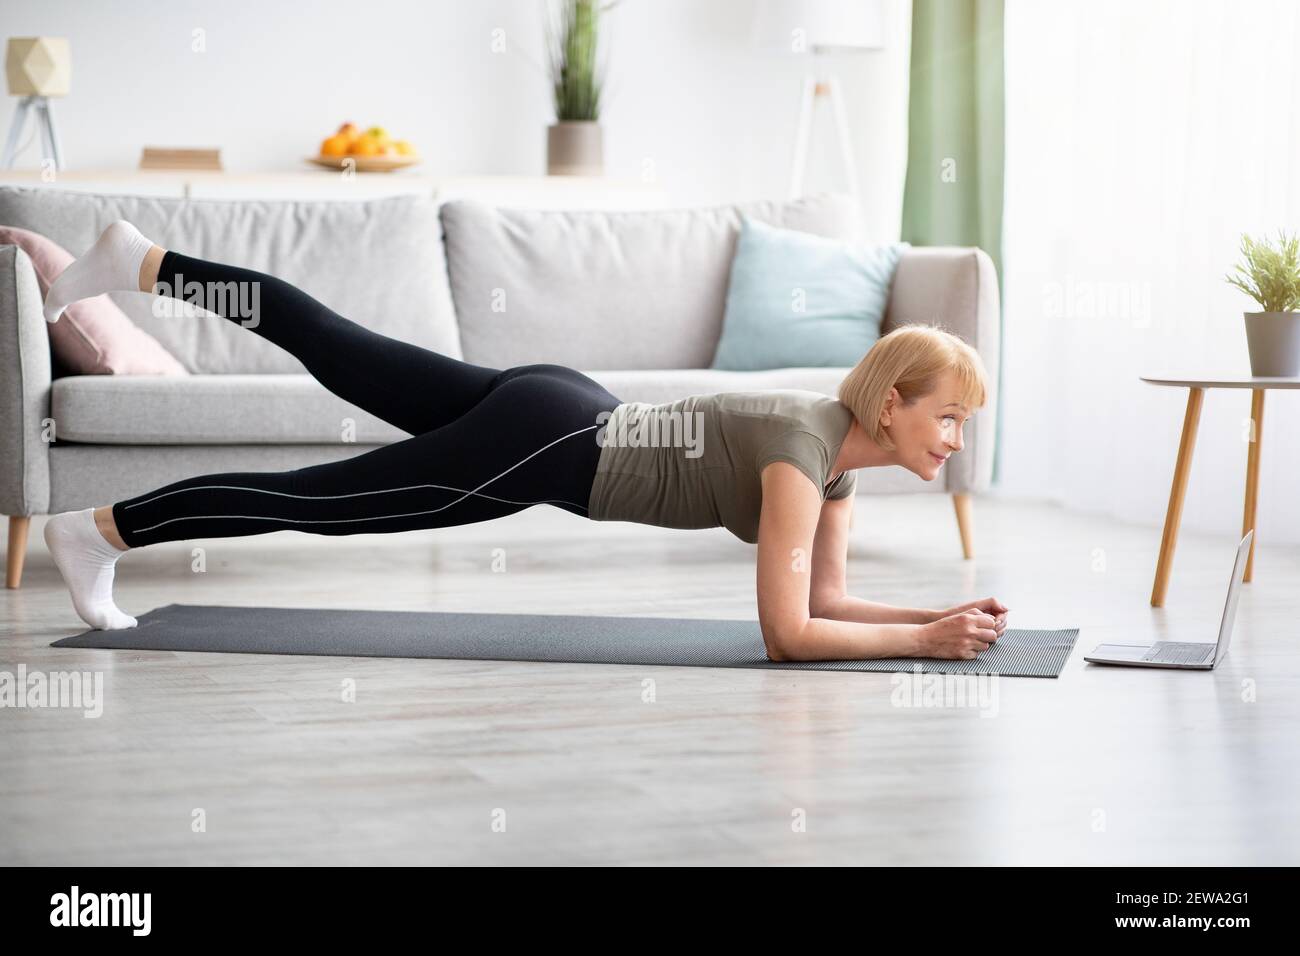 Concept de sports domestiques en ligne. Femme mature s'exerçant à la vidéo sur ordinateur portable, faisant coude planche à la maison Banque D'Images